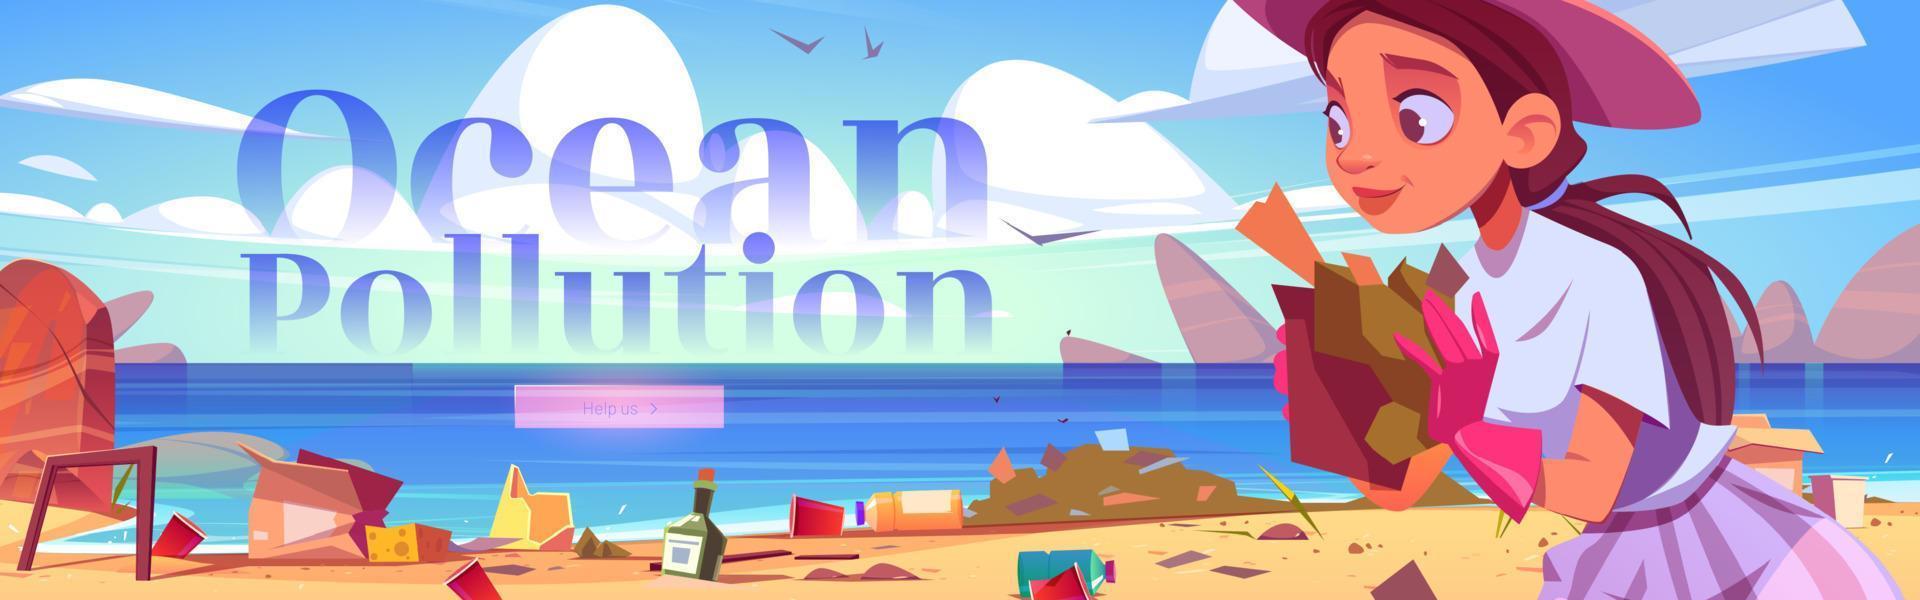 bannière web de dessin animé sur la pollution des océans, nettoyer la plage vecteur